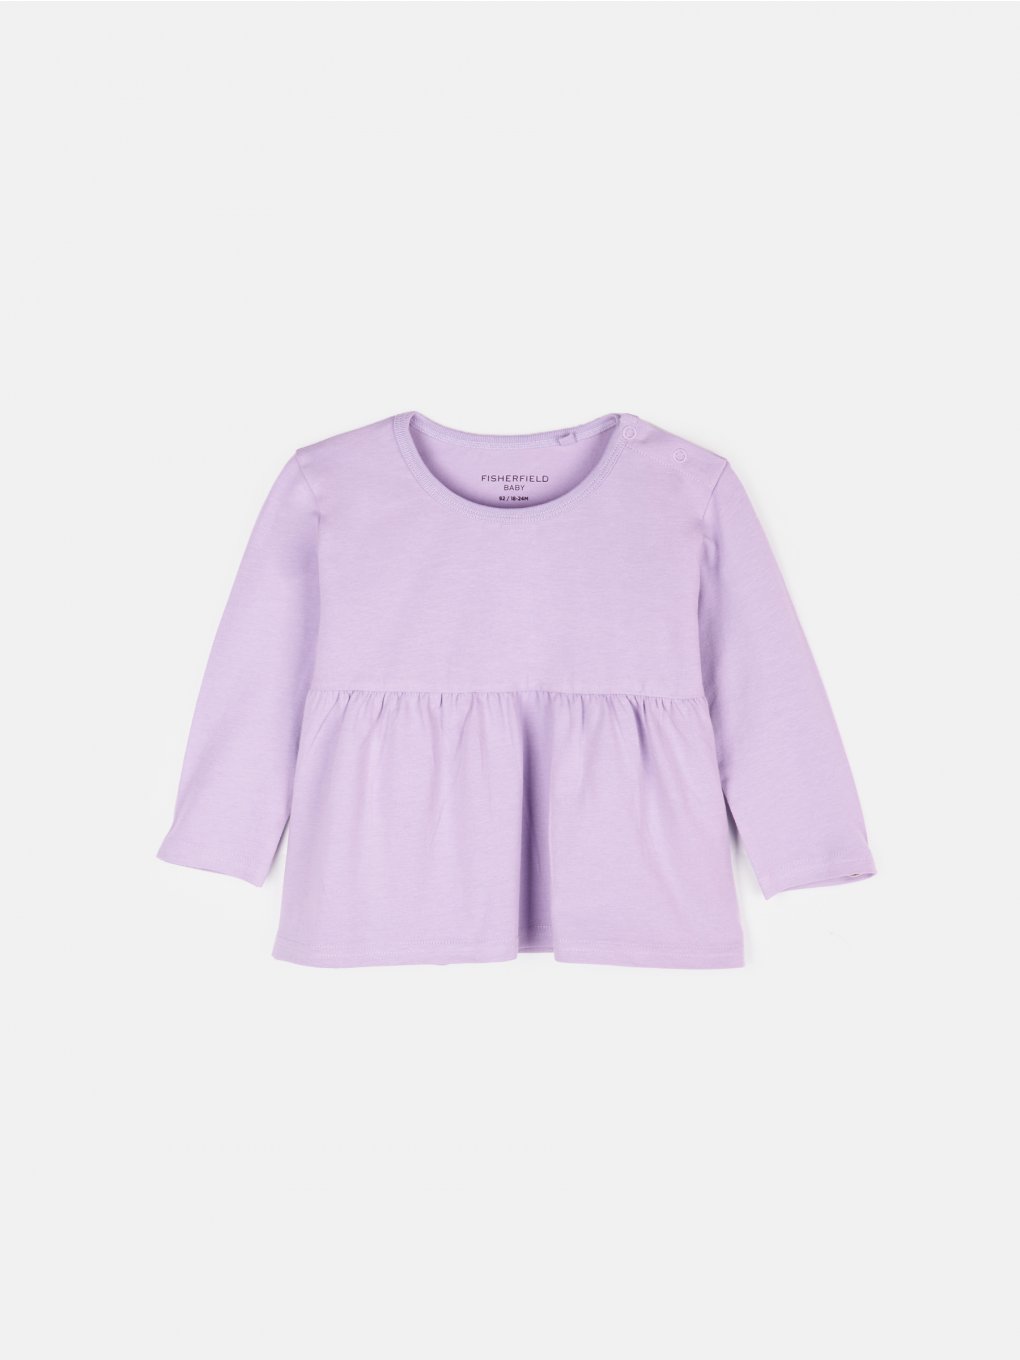 Základní elastické bavlněné šaty pro miminka